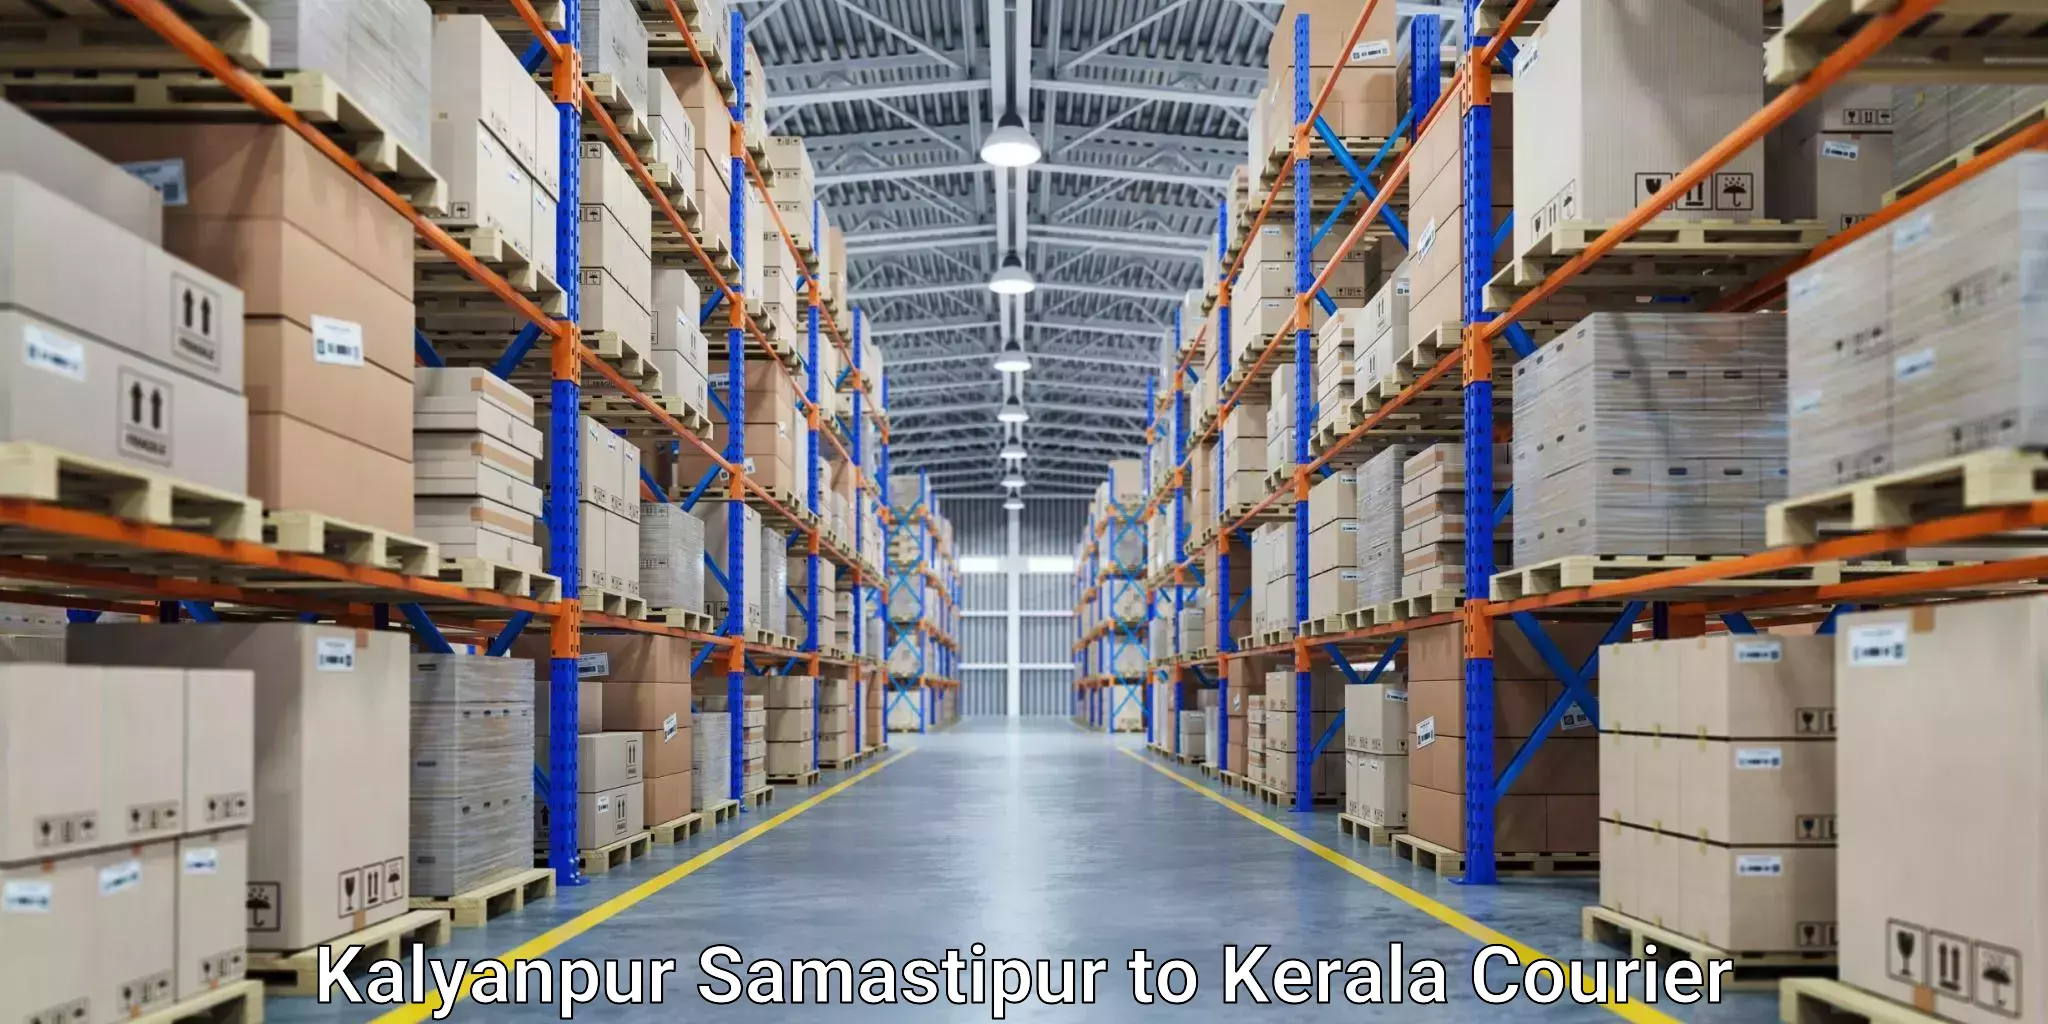 Same day shipping Kalyanpur Samastipur to Kerala